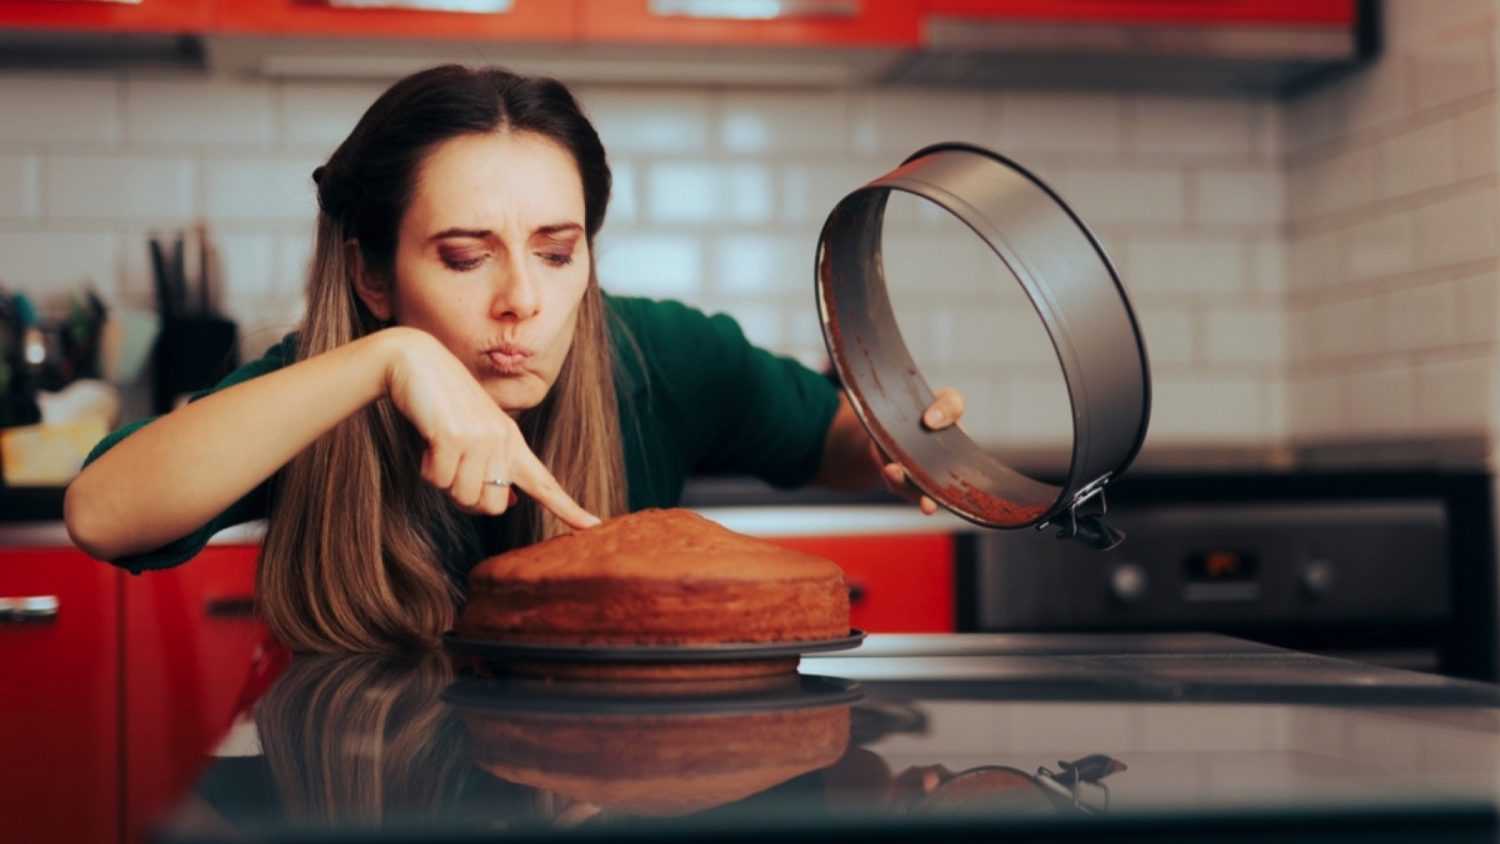 Woman Analyzing Cake